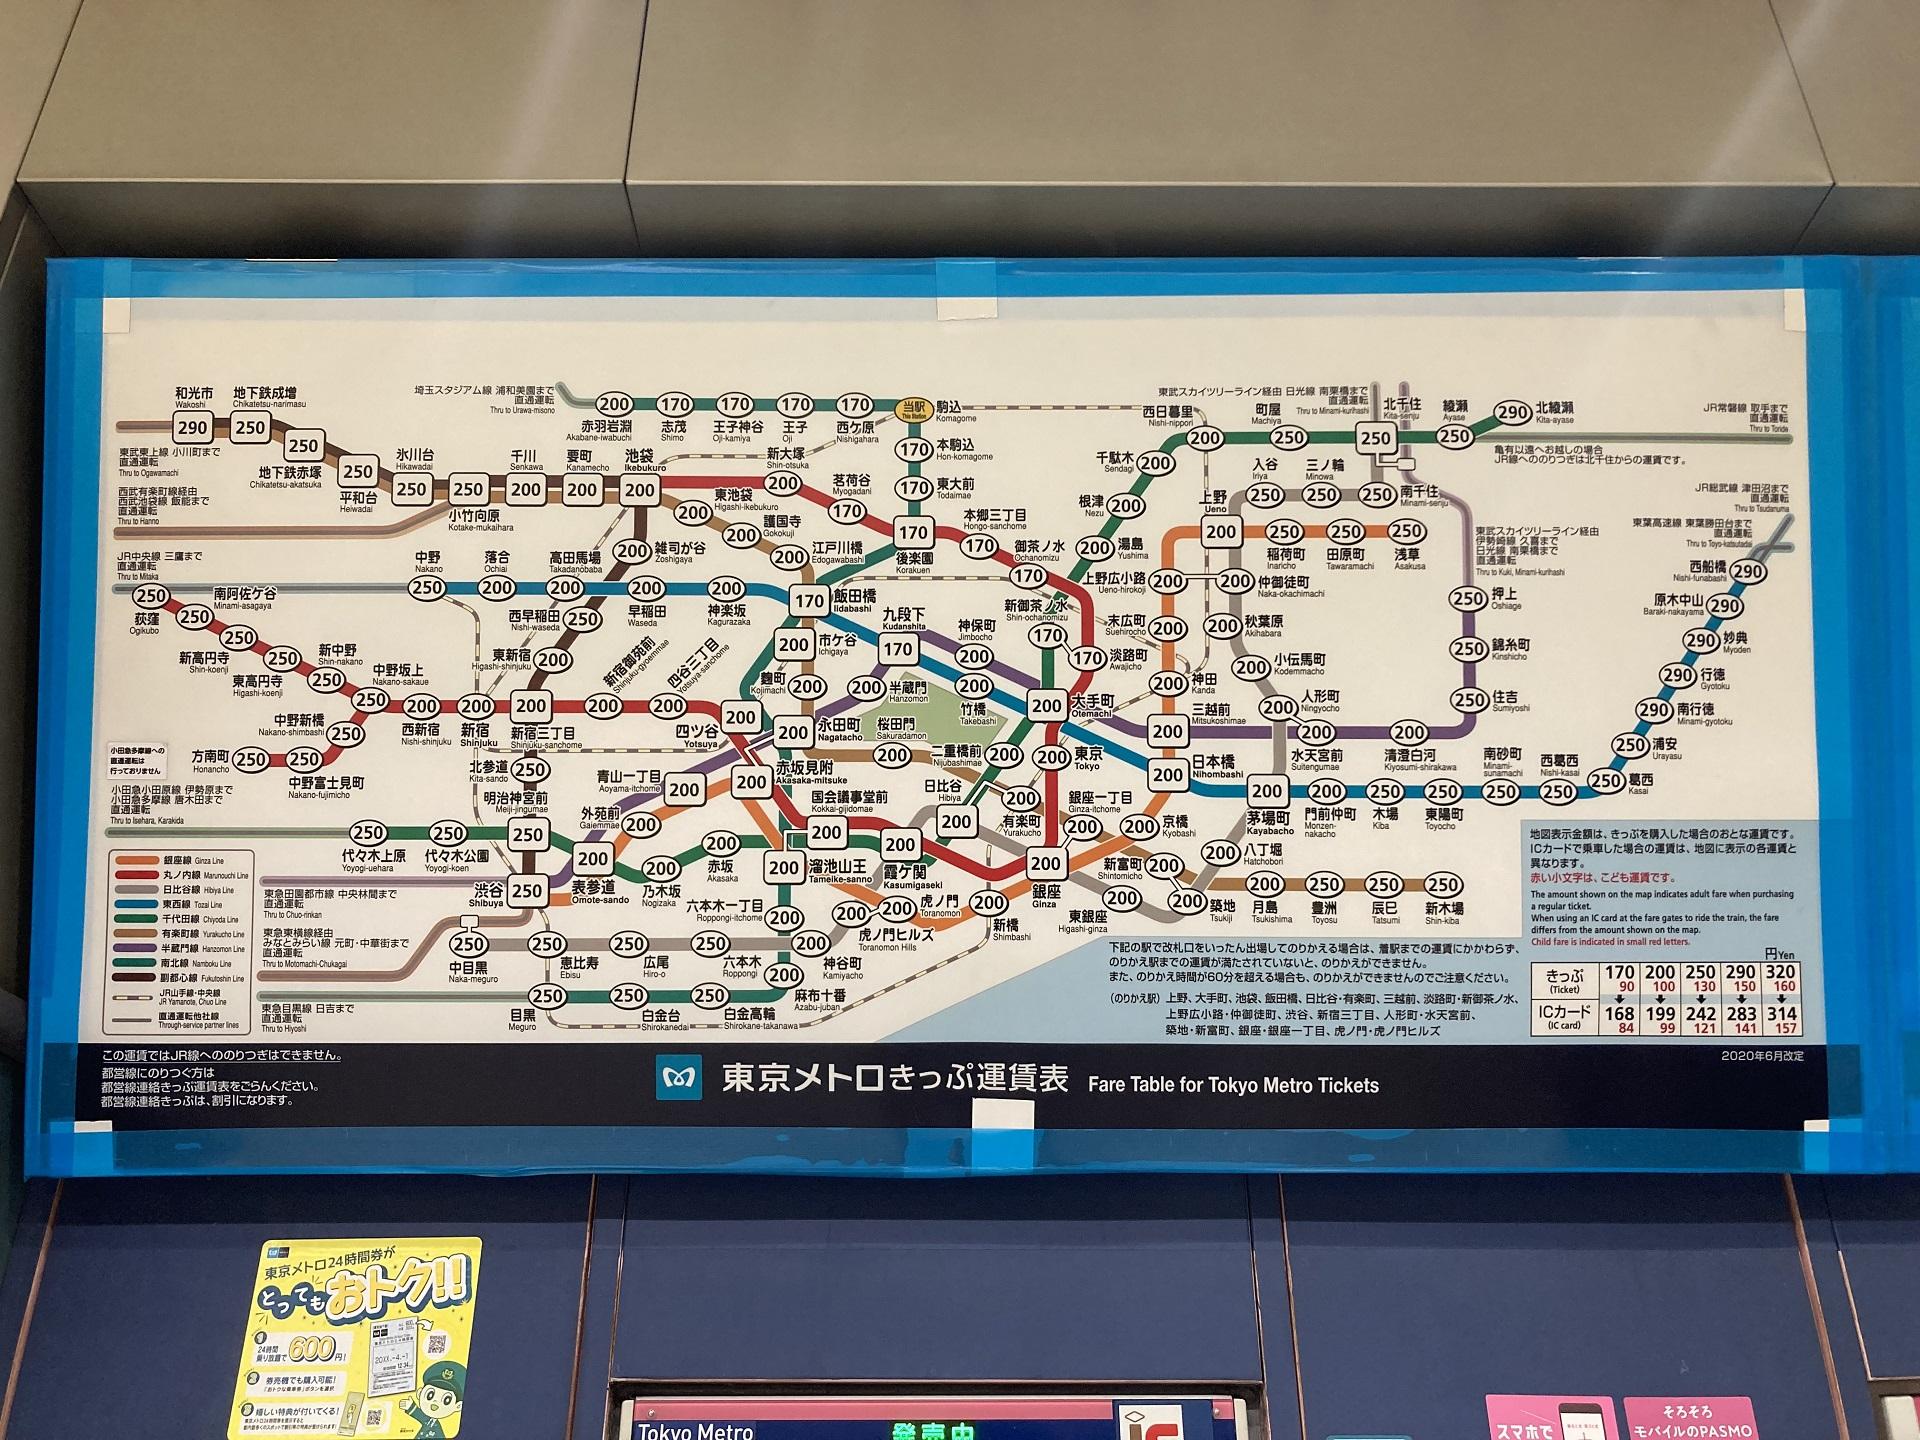 駒込駅を起点とした東京メトロきっぷ運賃表